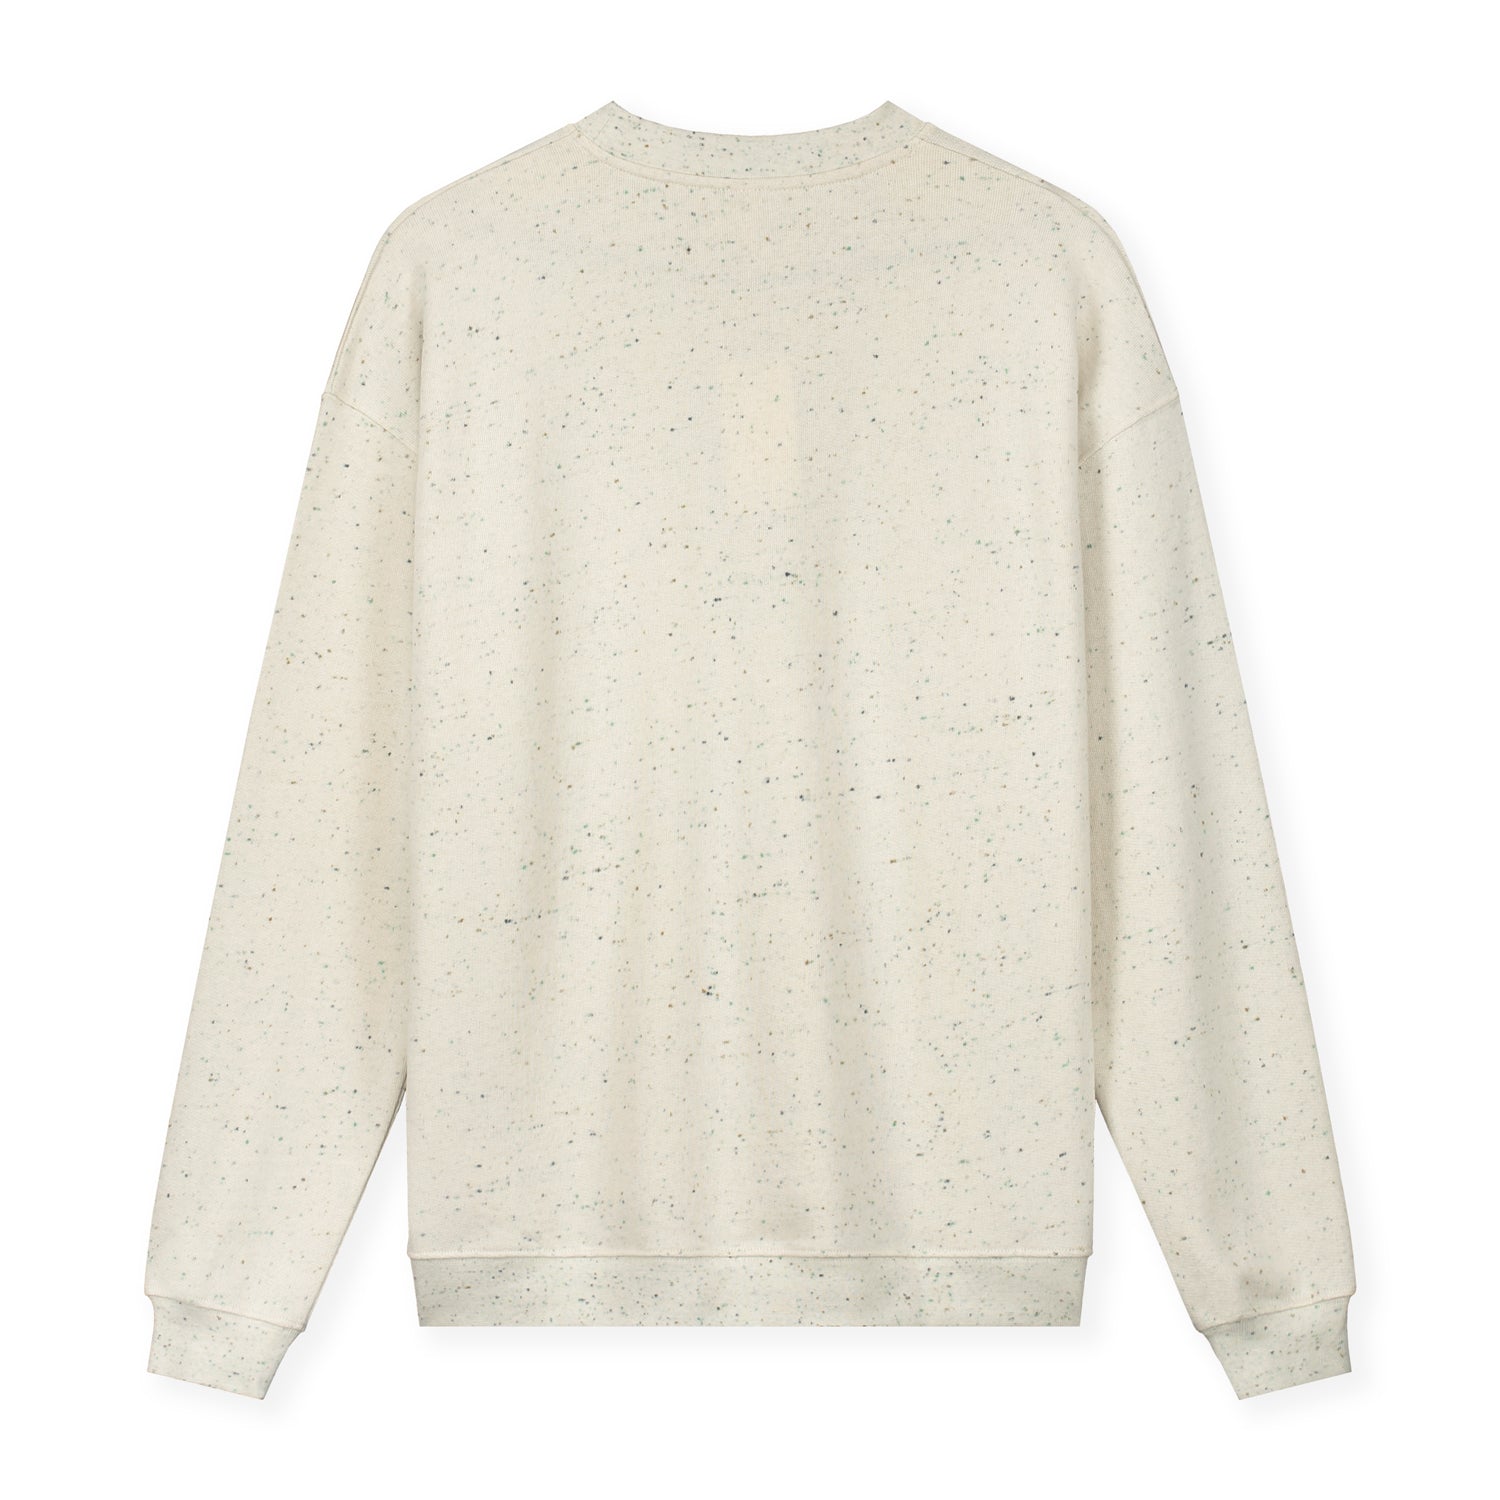 Adult Beige Cotton Sweatshirt